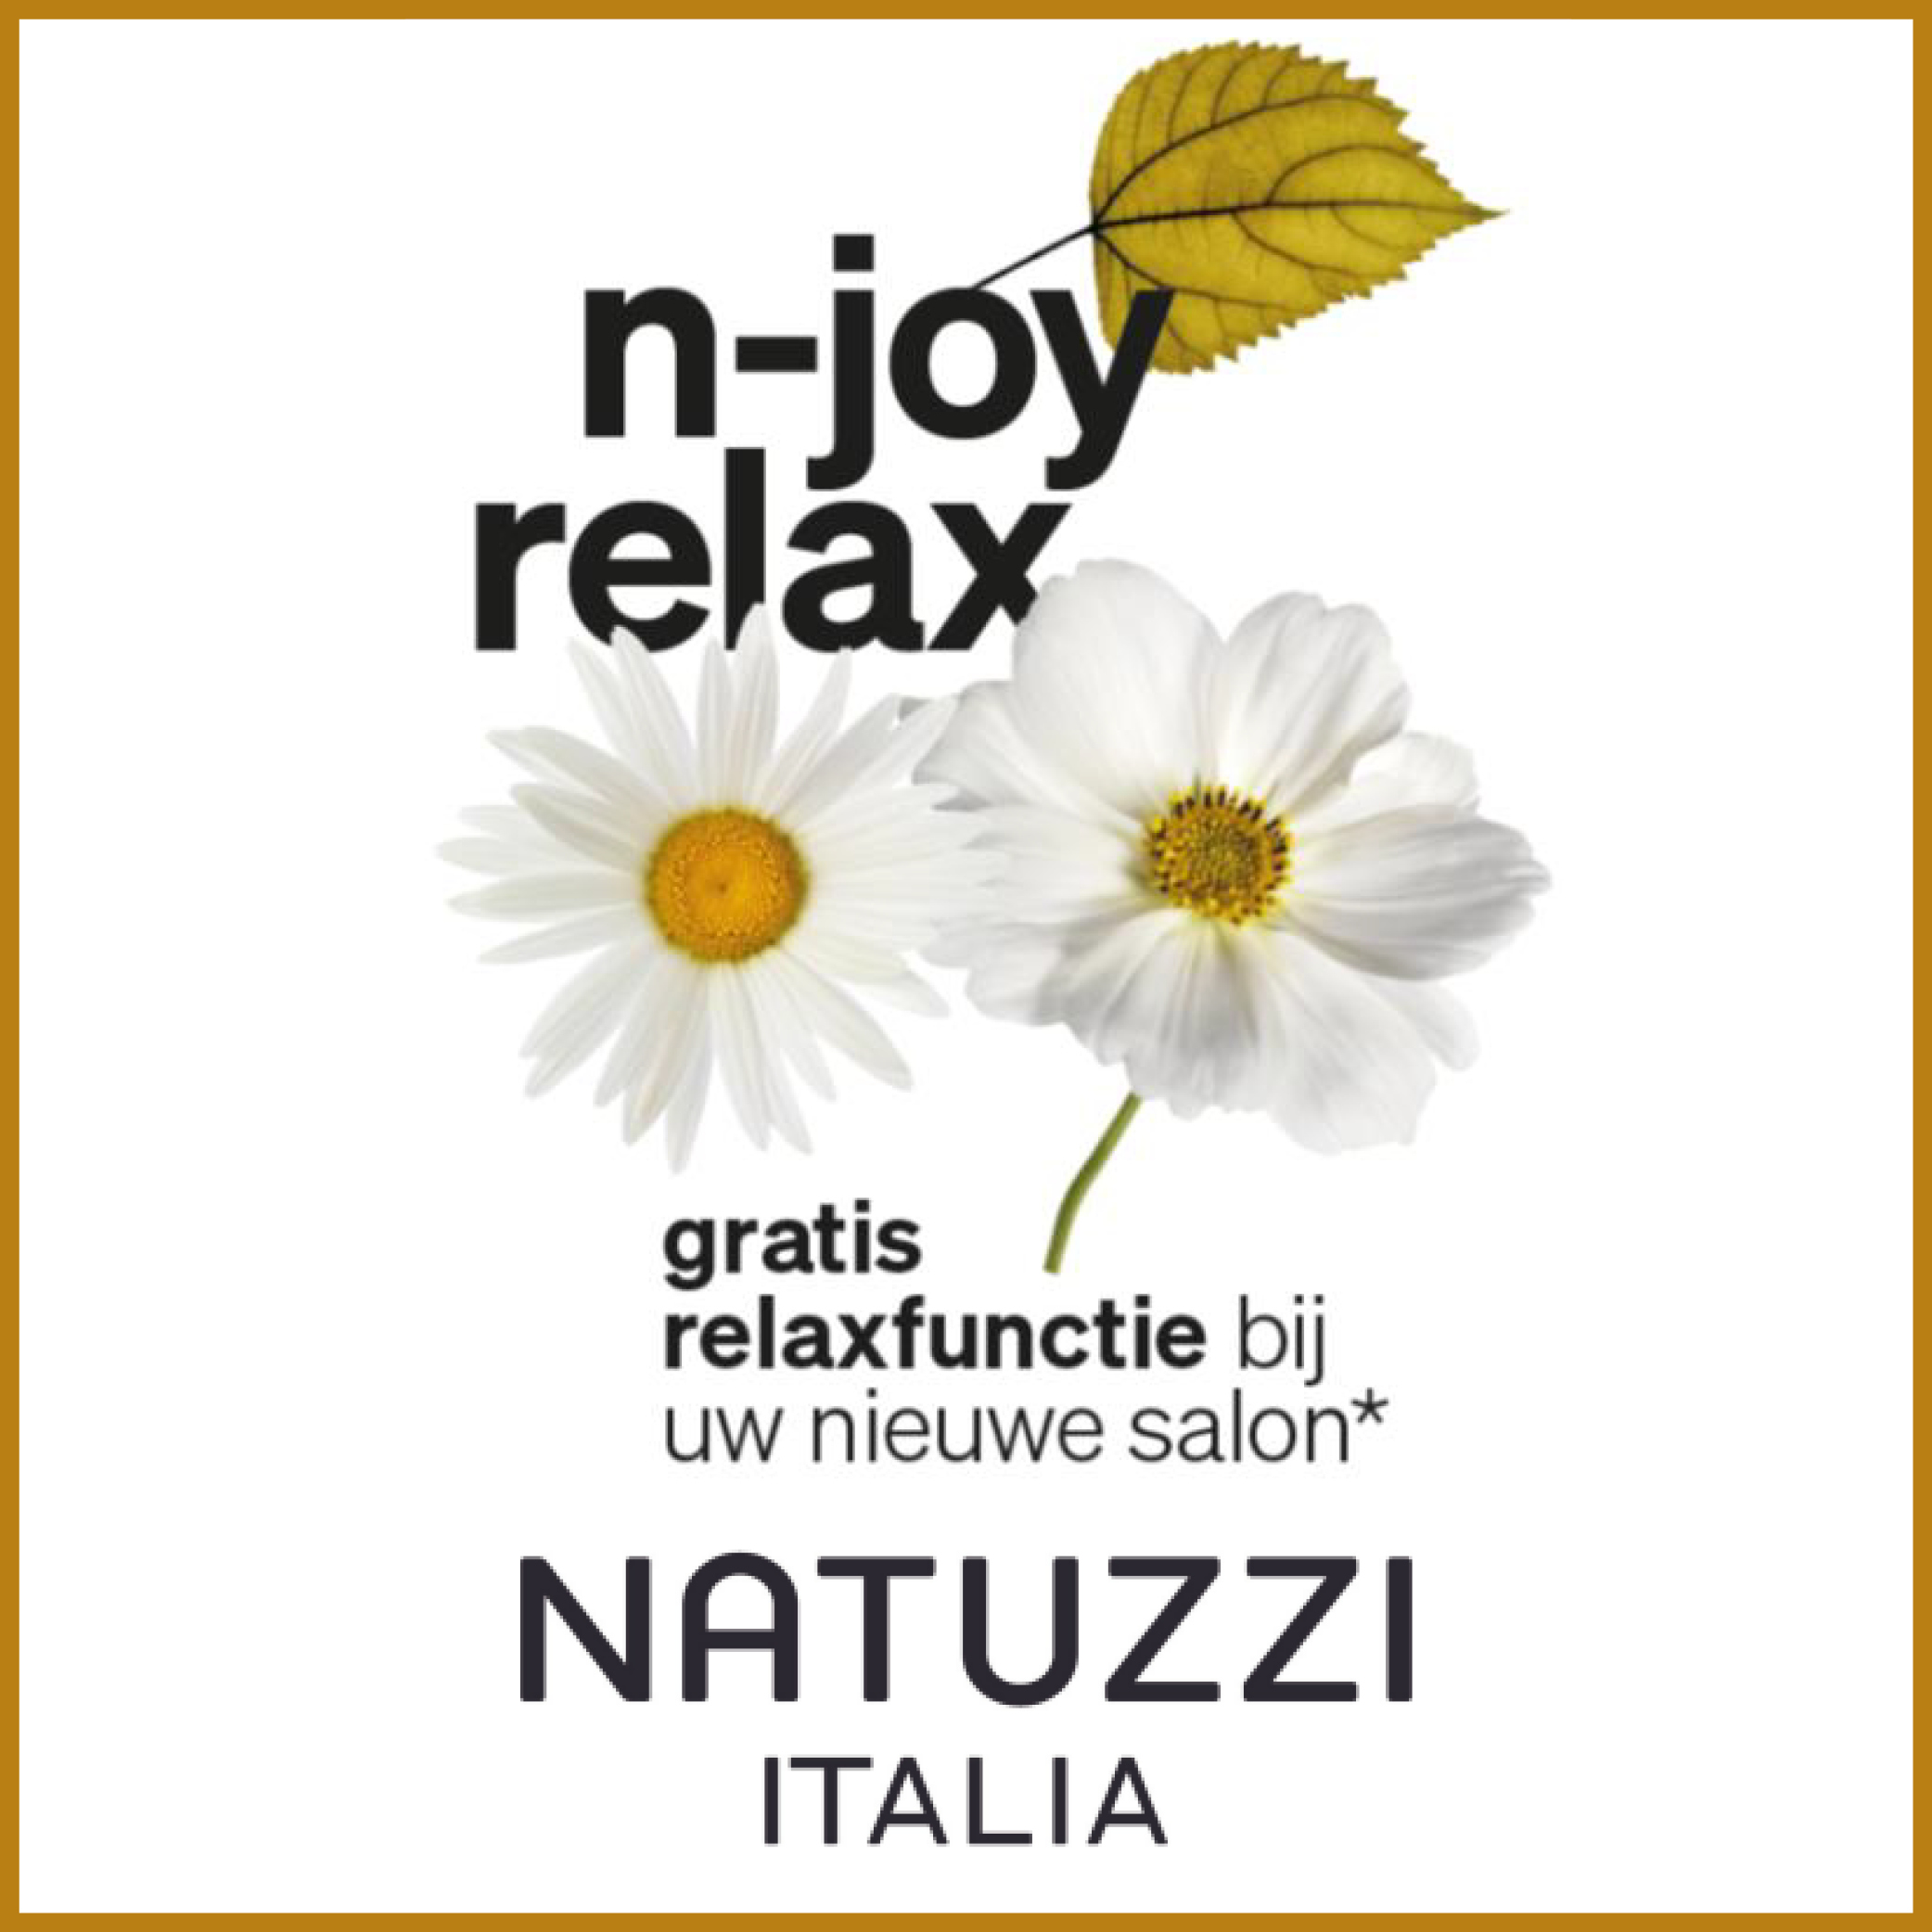 Natuzzi Italia n-joy relax